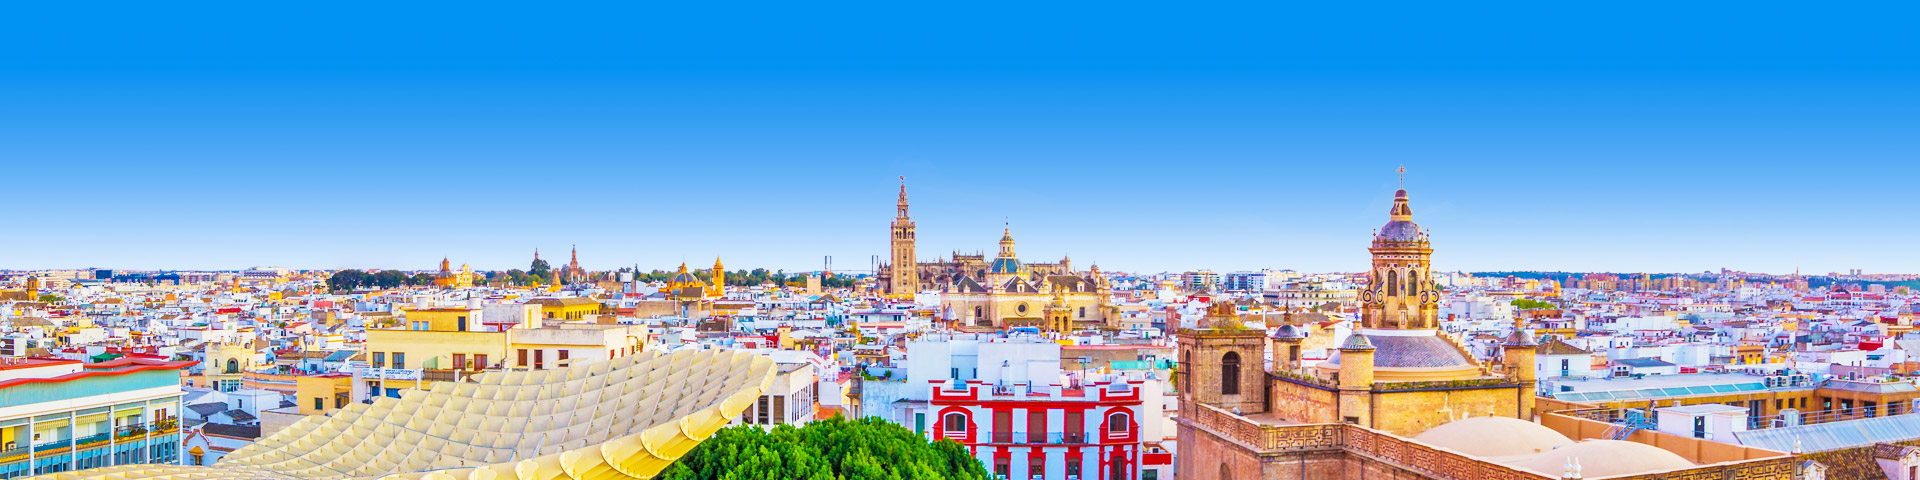 Uitzicht over de stad Sevilla